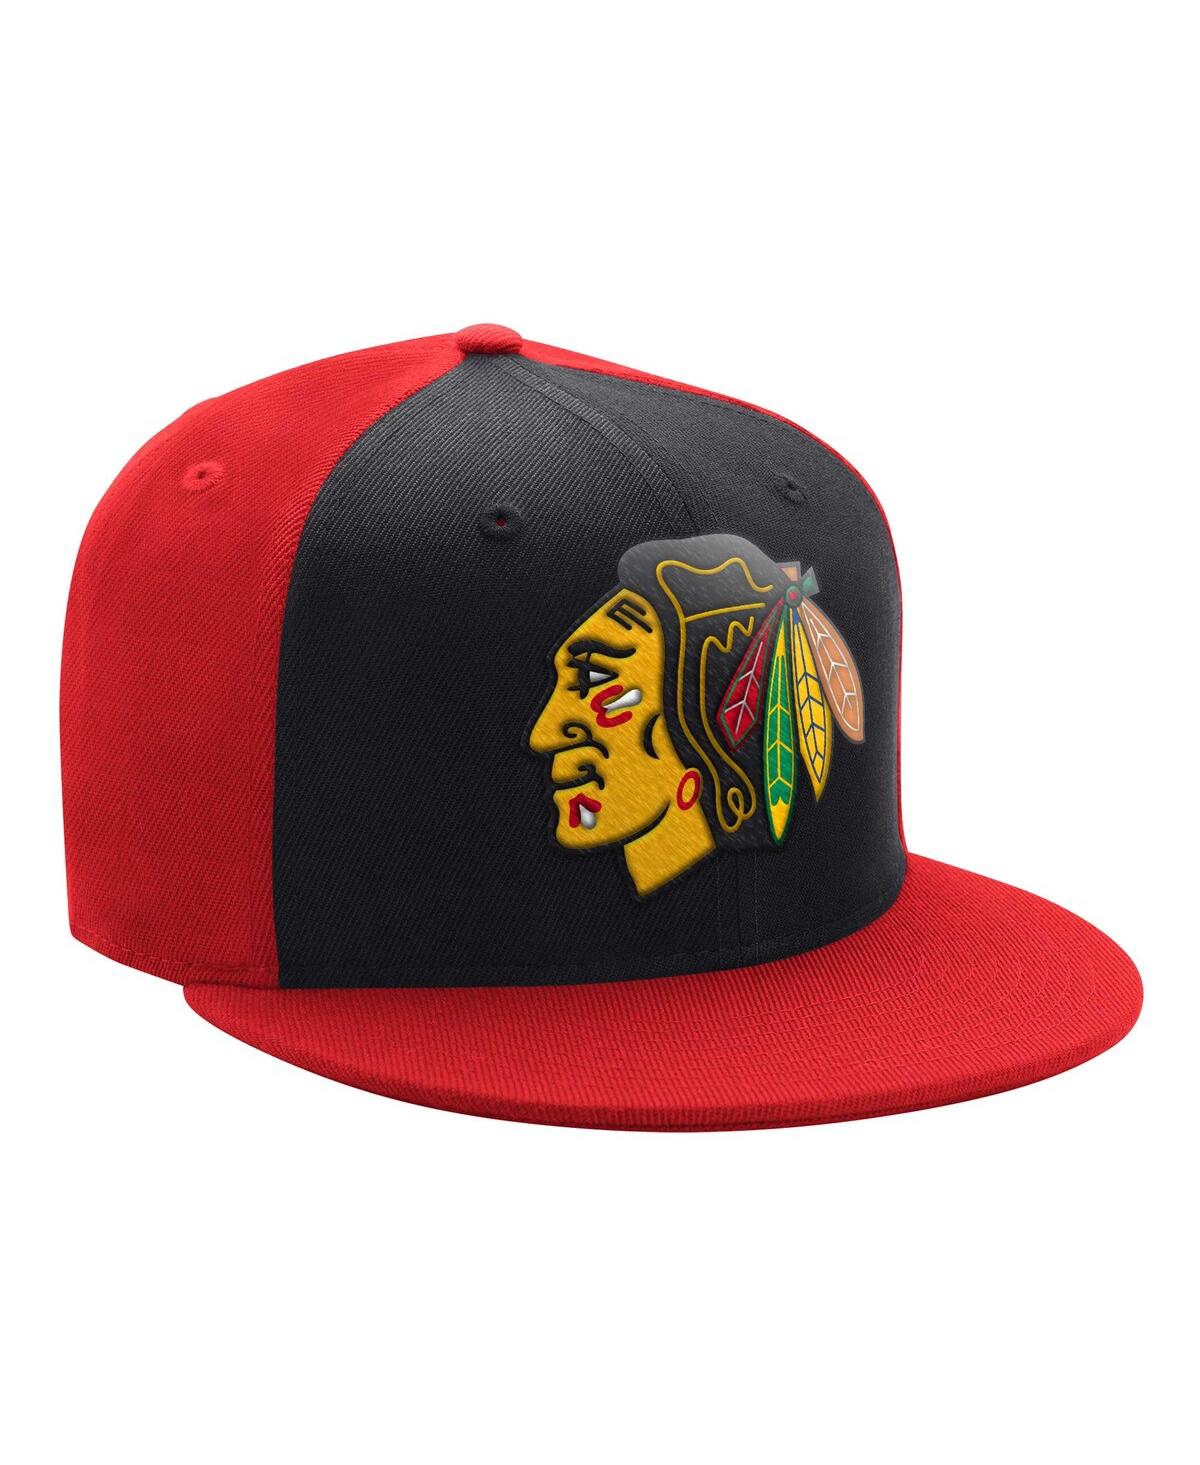 Men's Starter Black, Red Chicago Blackhawks Logo Two-Tone Snapback Hat - Black, Red